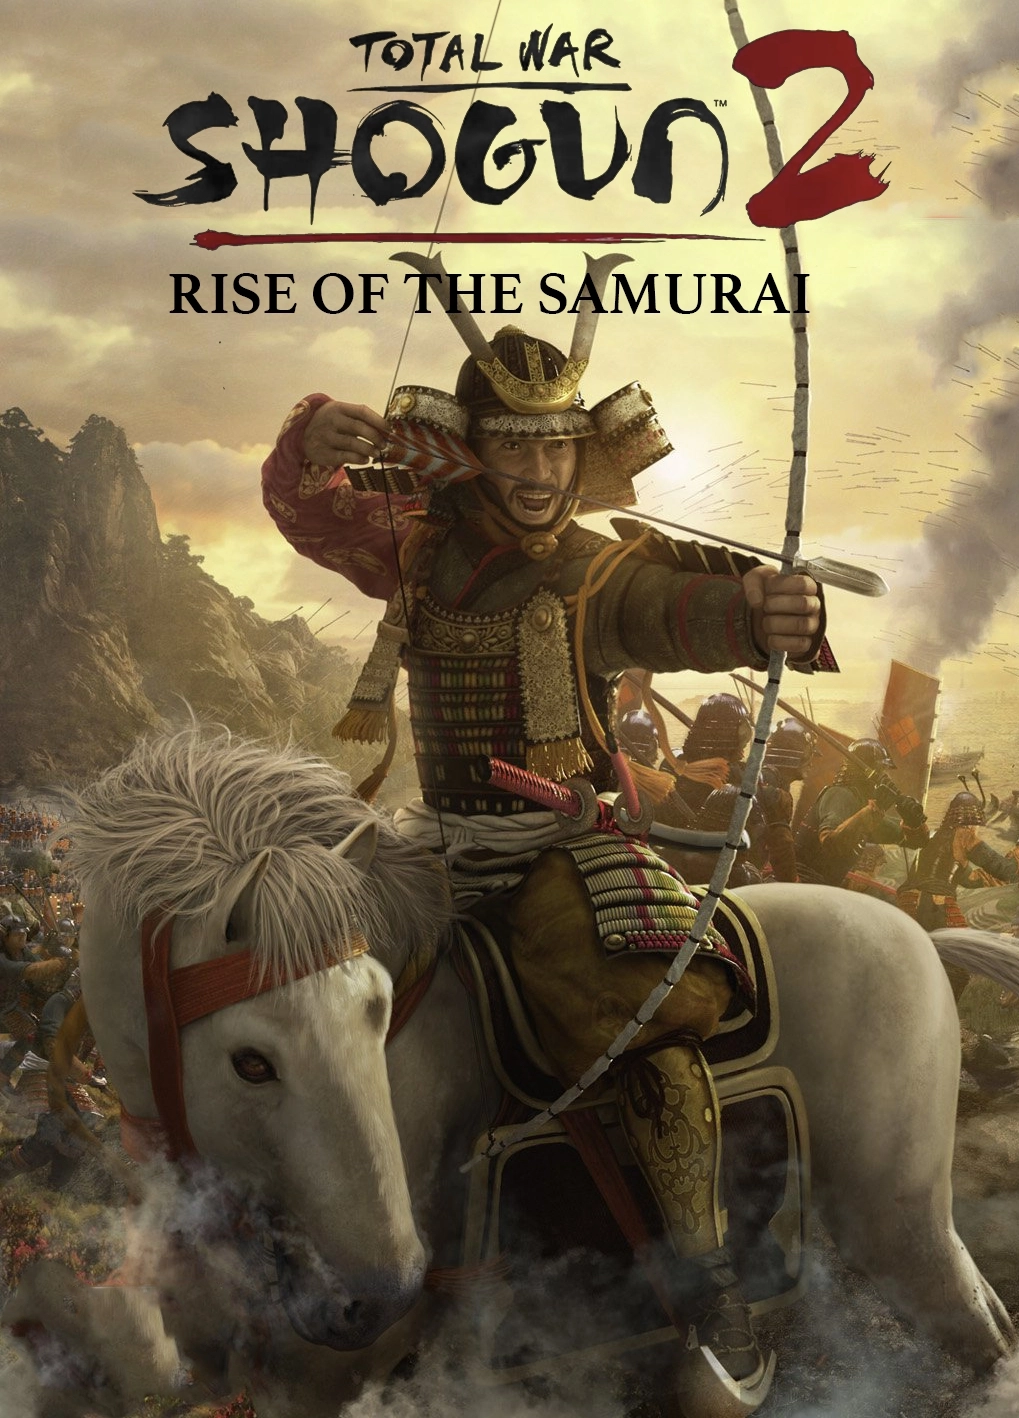 Total War: SHOGUN 2 - Rise of the Samurai Campaign DLC (PC / Mac / Linux) - Steam - Digital Code